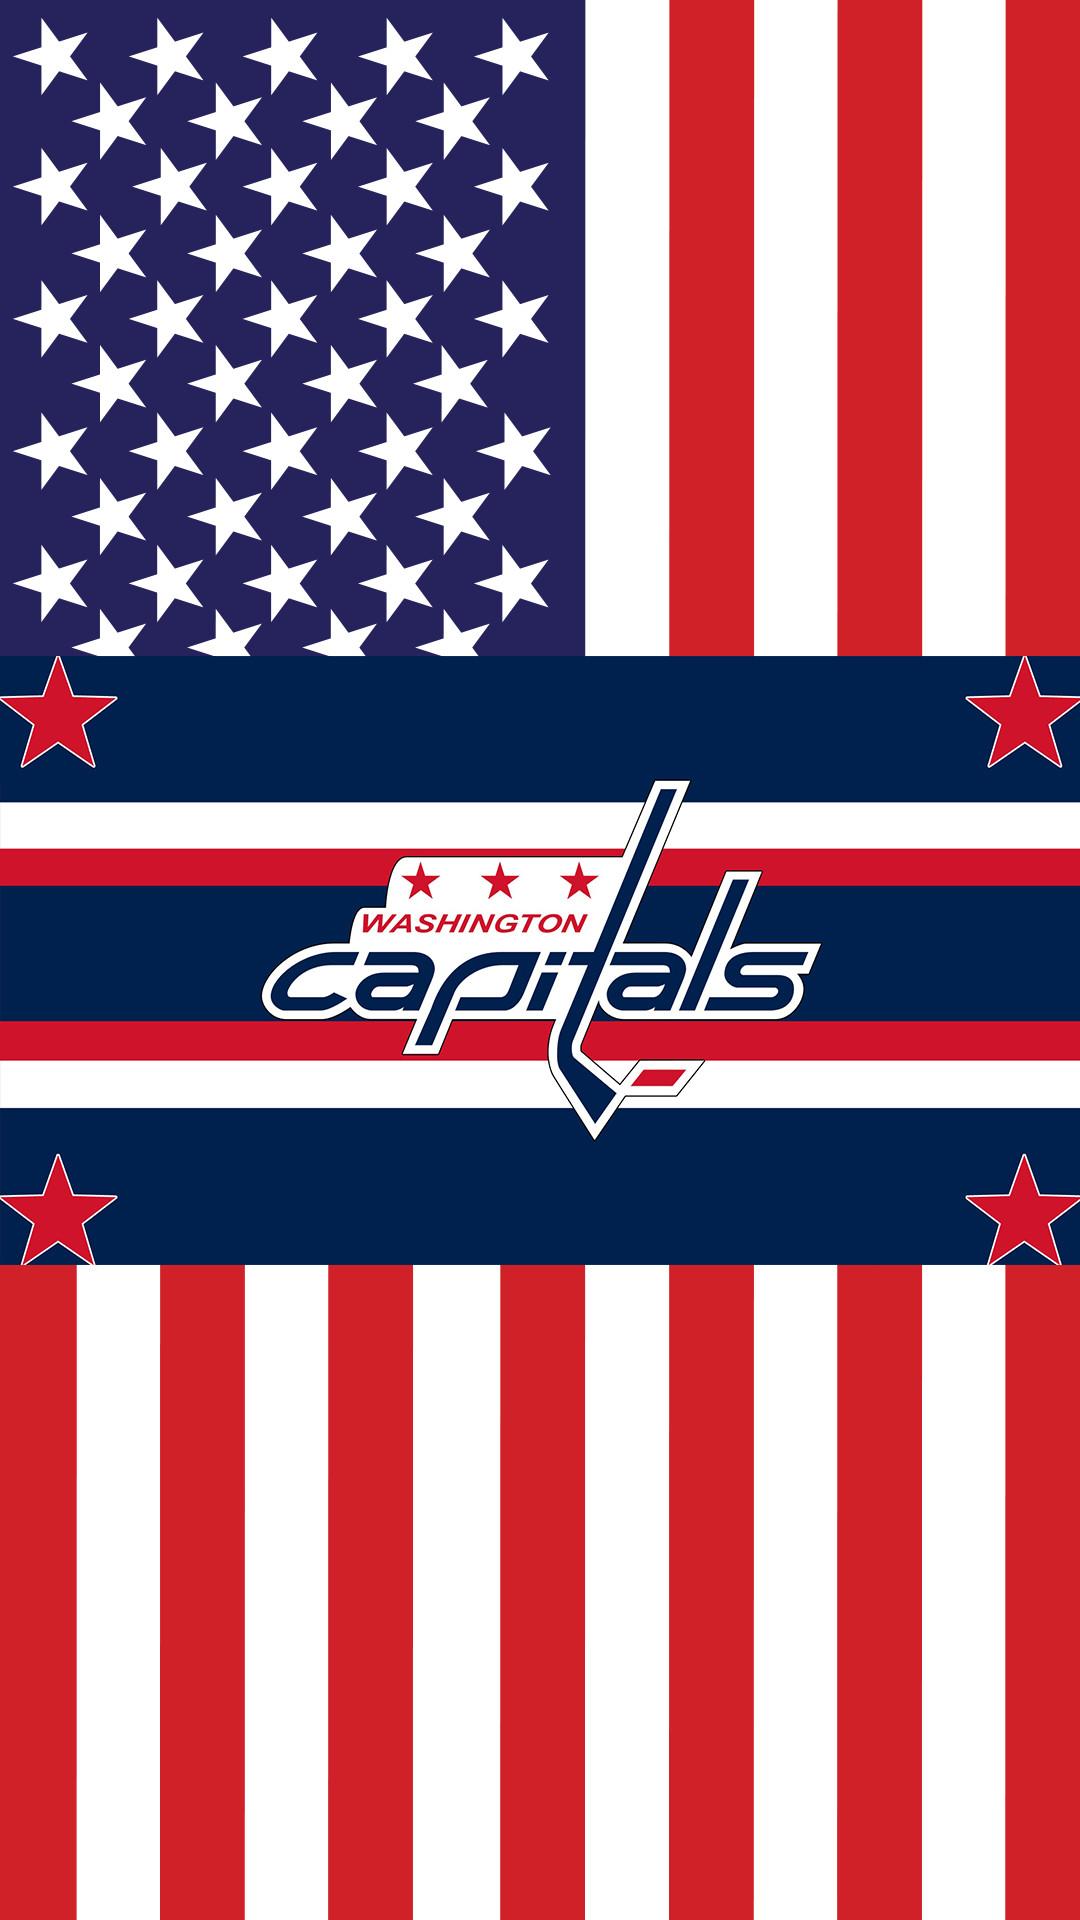 Washington Capitals (NHL) iPhone X/XS/XR Lock Screen Wallp…